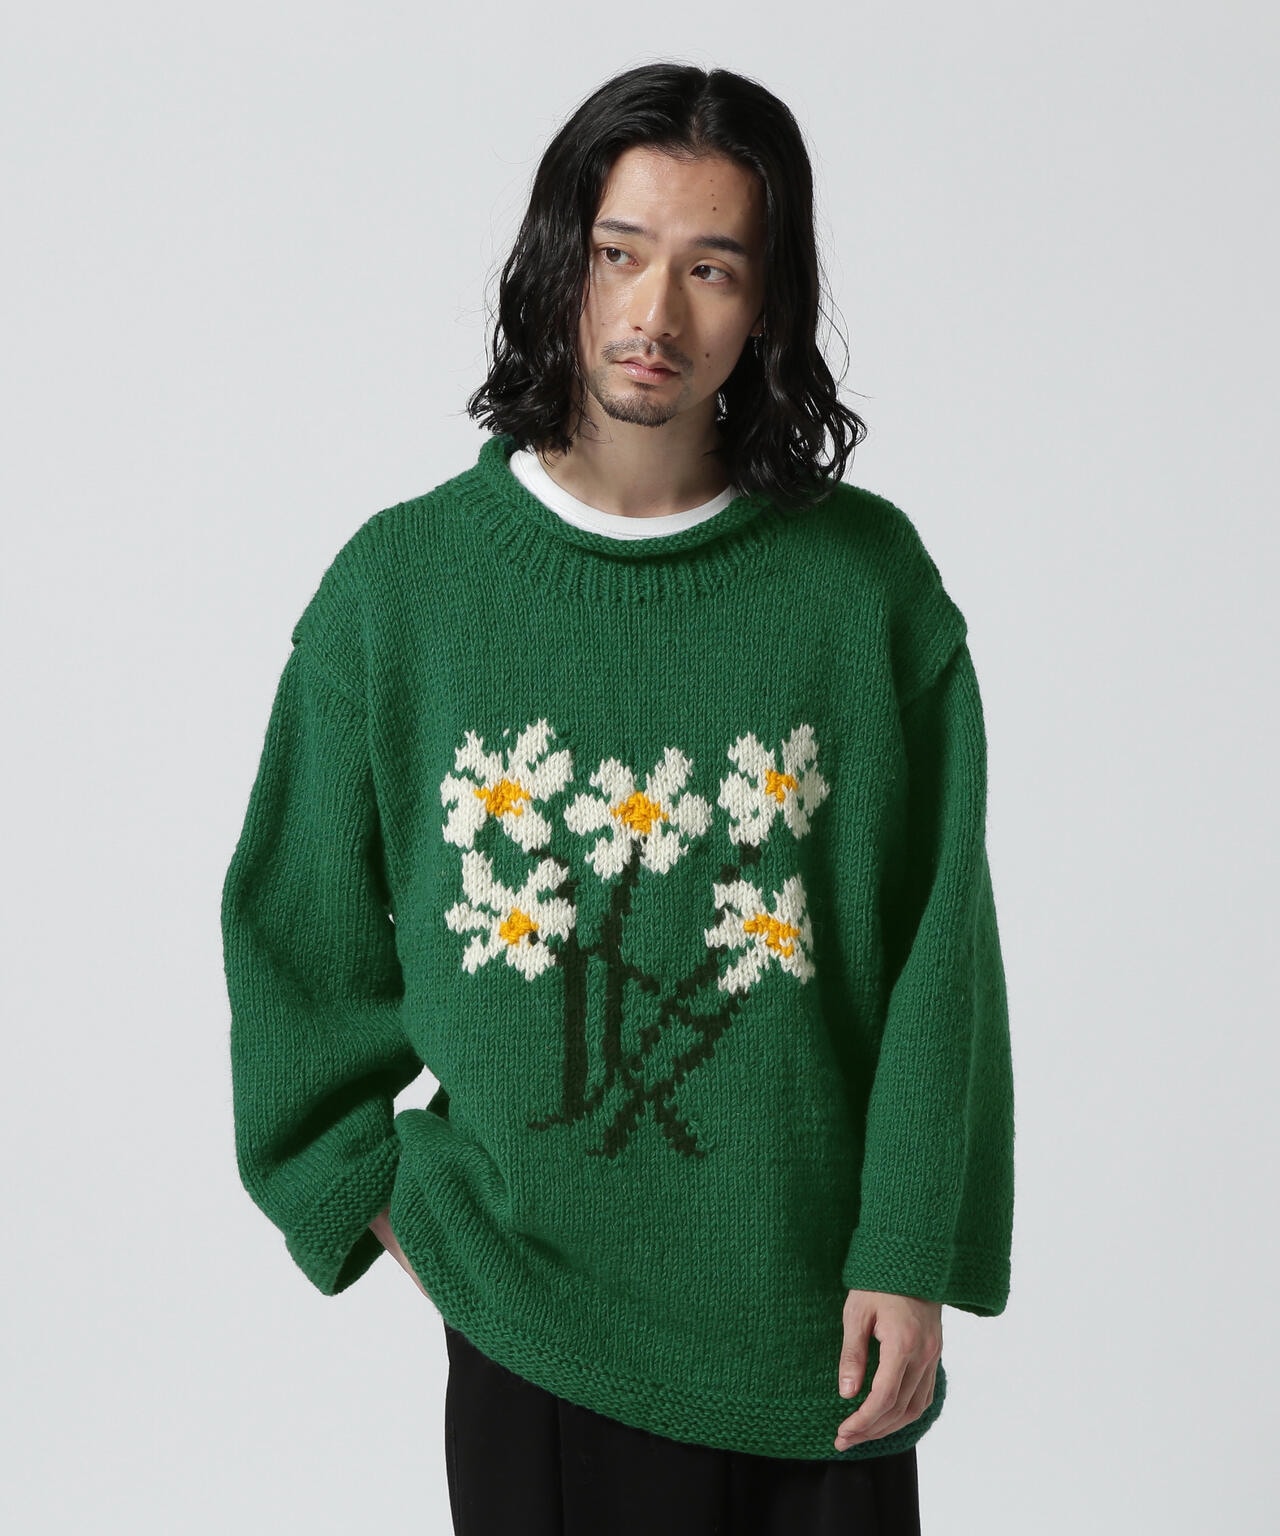 超安い品質 Niche Macmahon Knitting Mills ニット 緑×ピンク ニット 